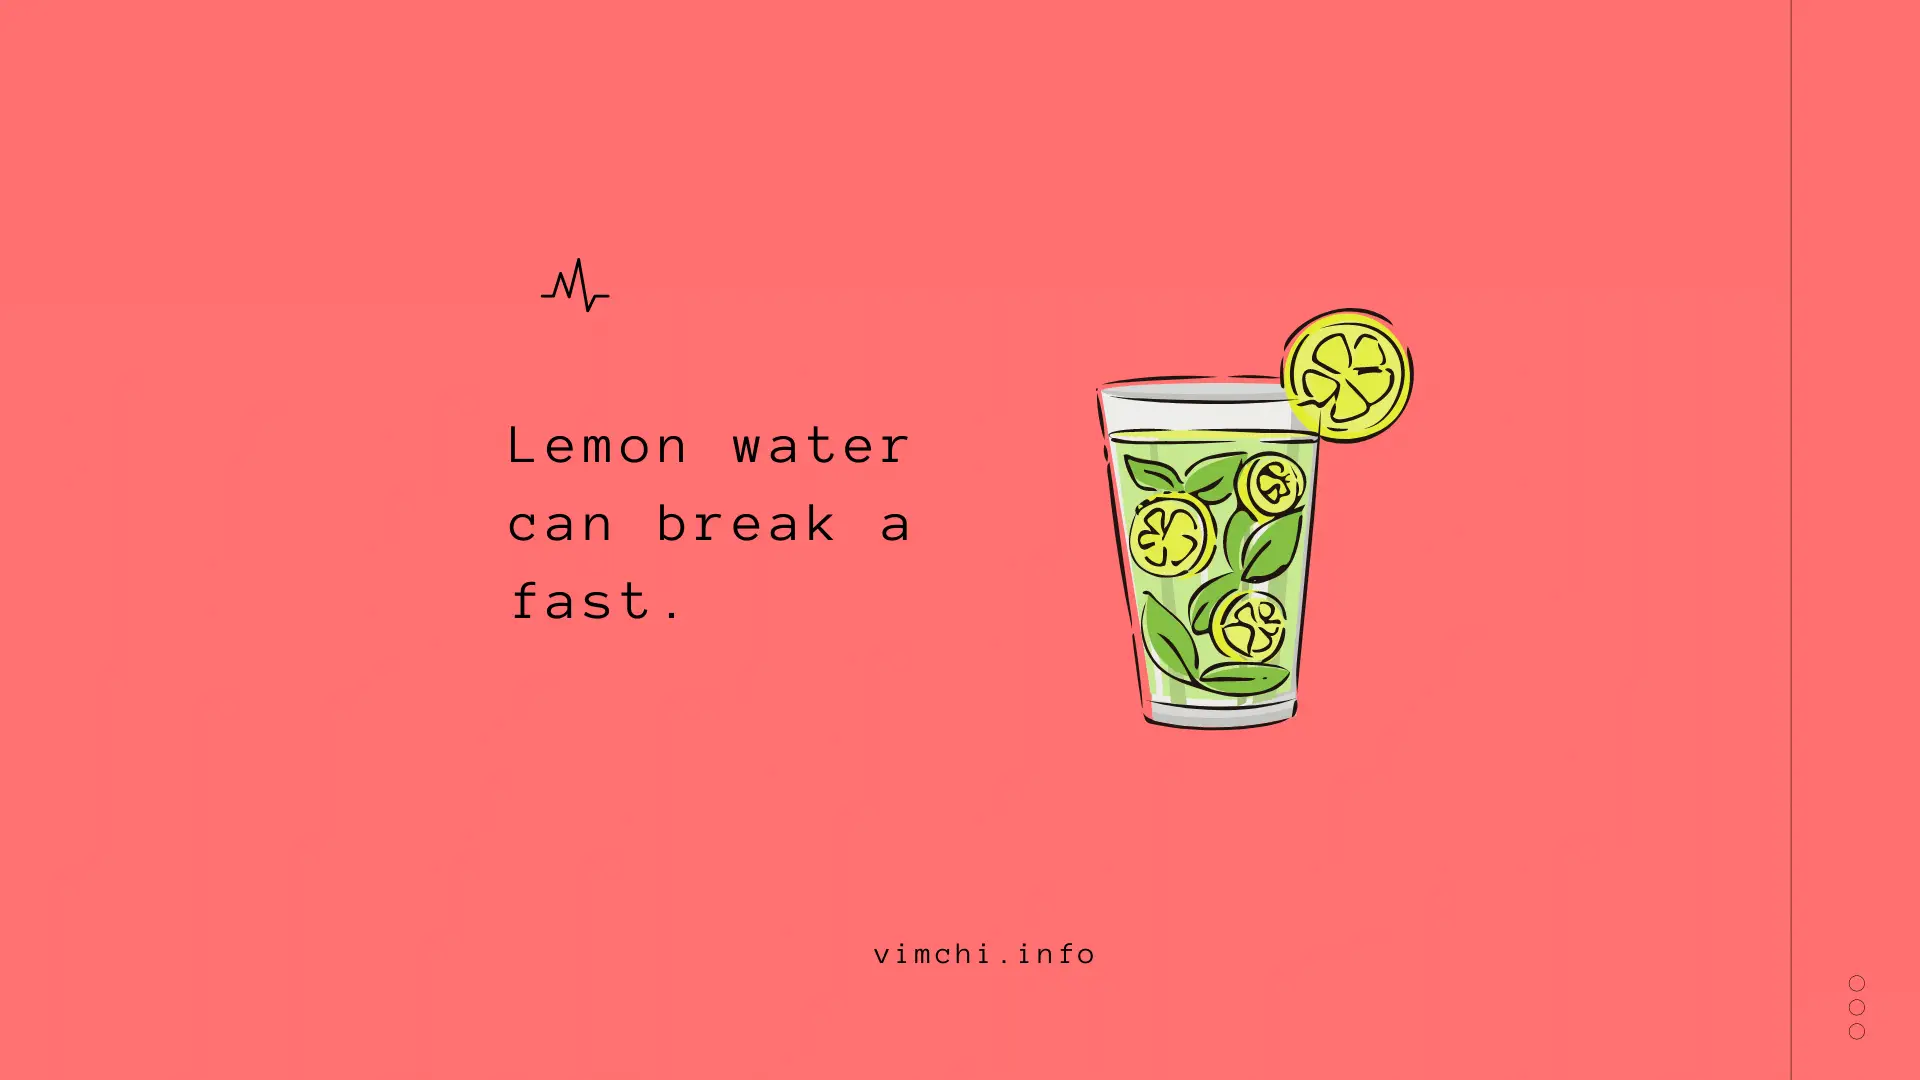 Does lemon water break a fast